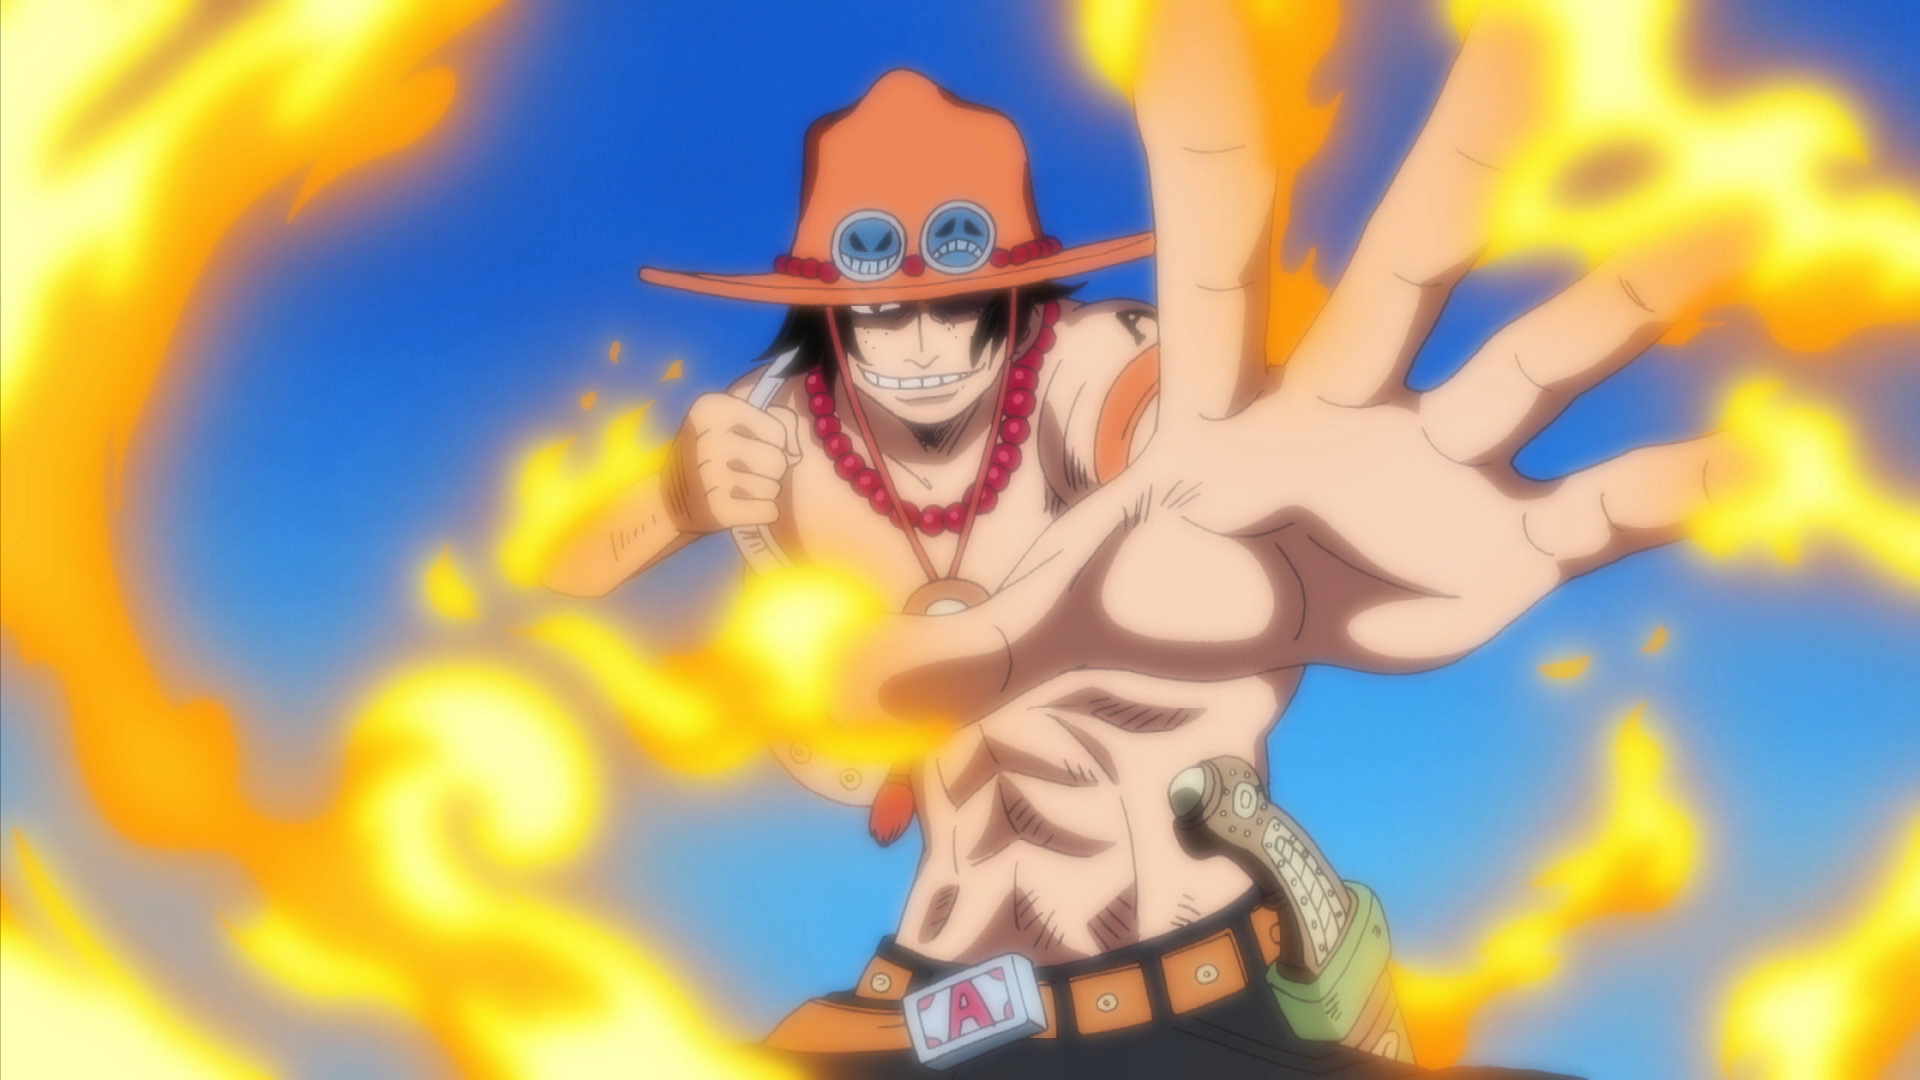 Bộ ảnh đen trắng về các nhân vật trong One Piece mang đậm chất nghệ thuật   One piece Nghệ thuật Hình ảnh